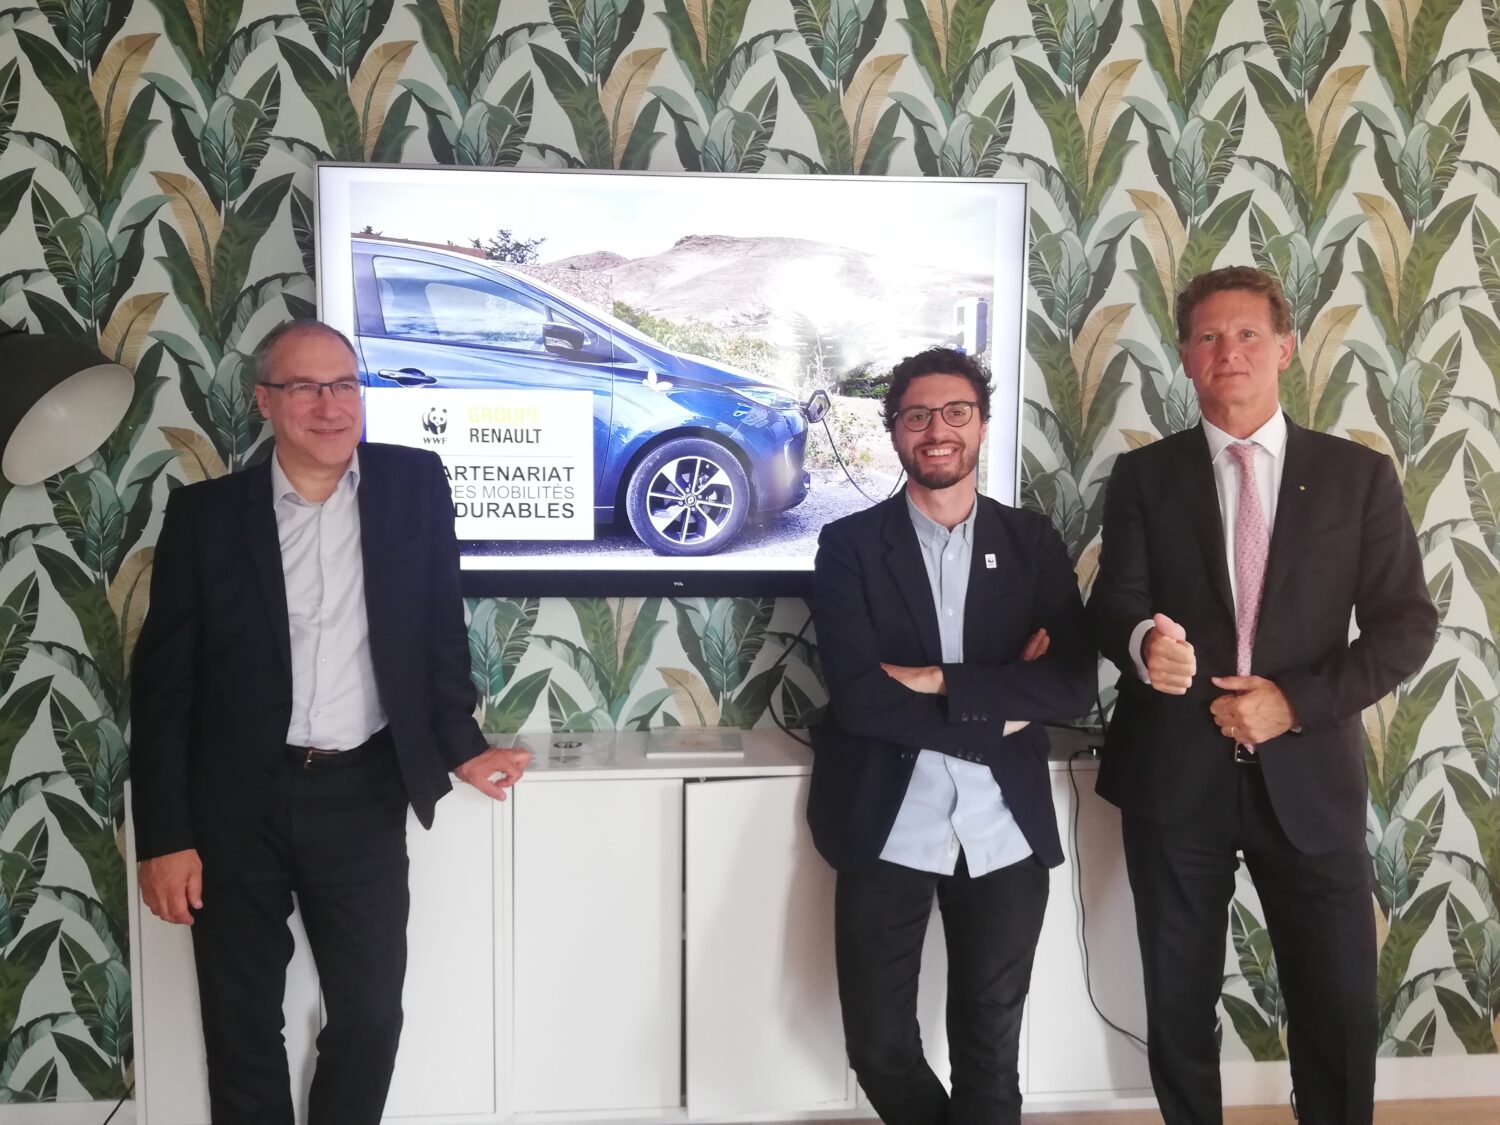 Le WWF France et le Groupe Renault annoncent un partenariat visant à mettre en œuvre une mobilité plus électrique et plus partagée, associée au développement des énergies renouvelables